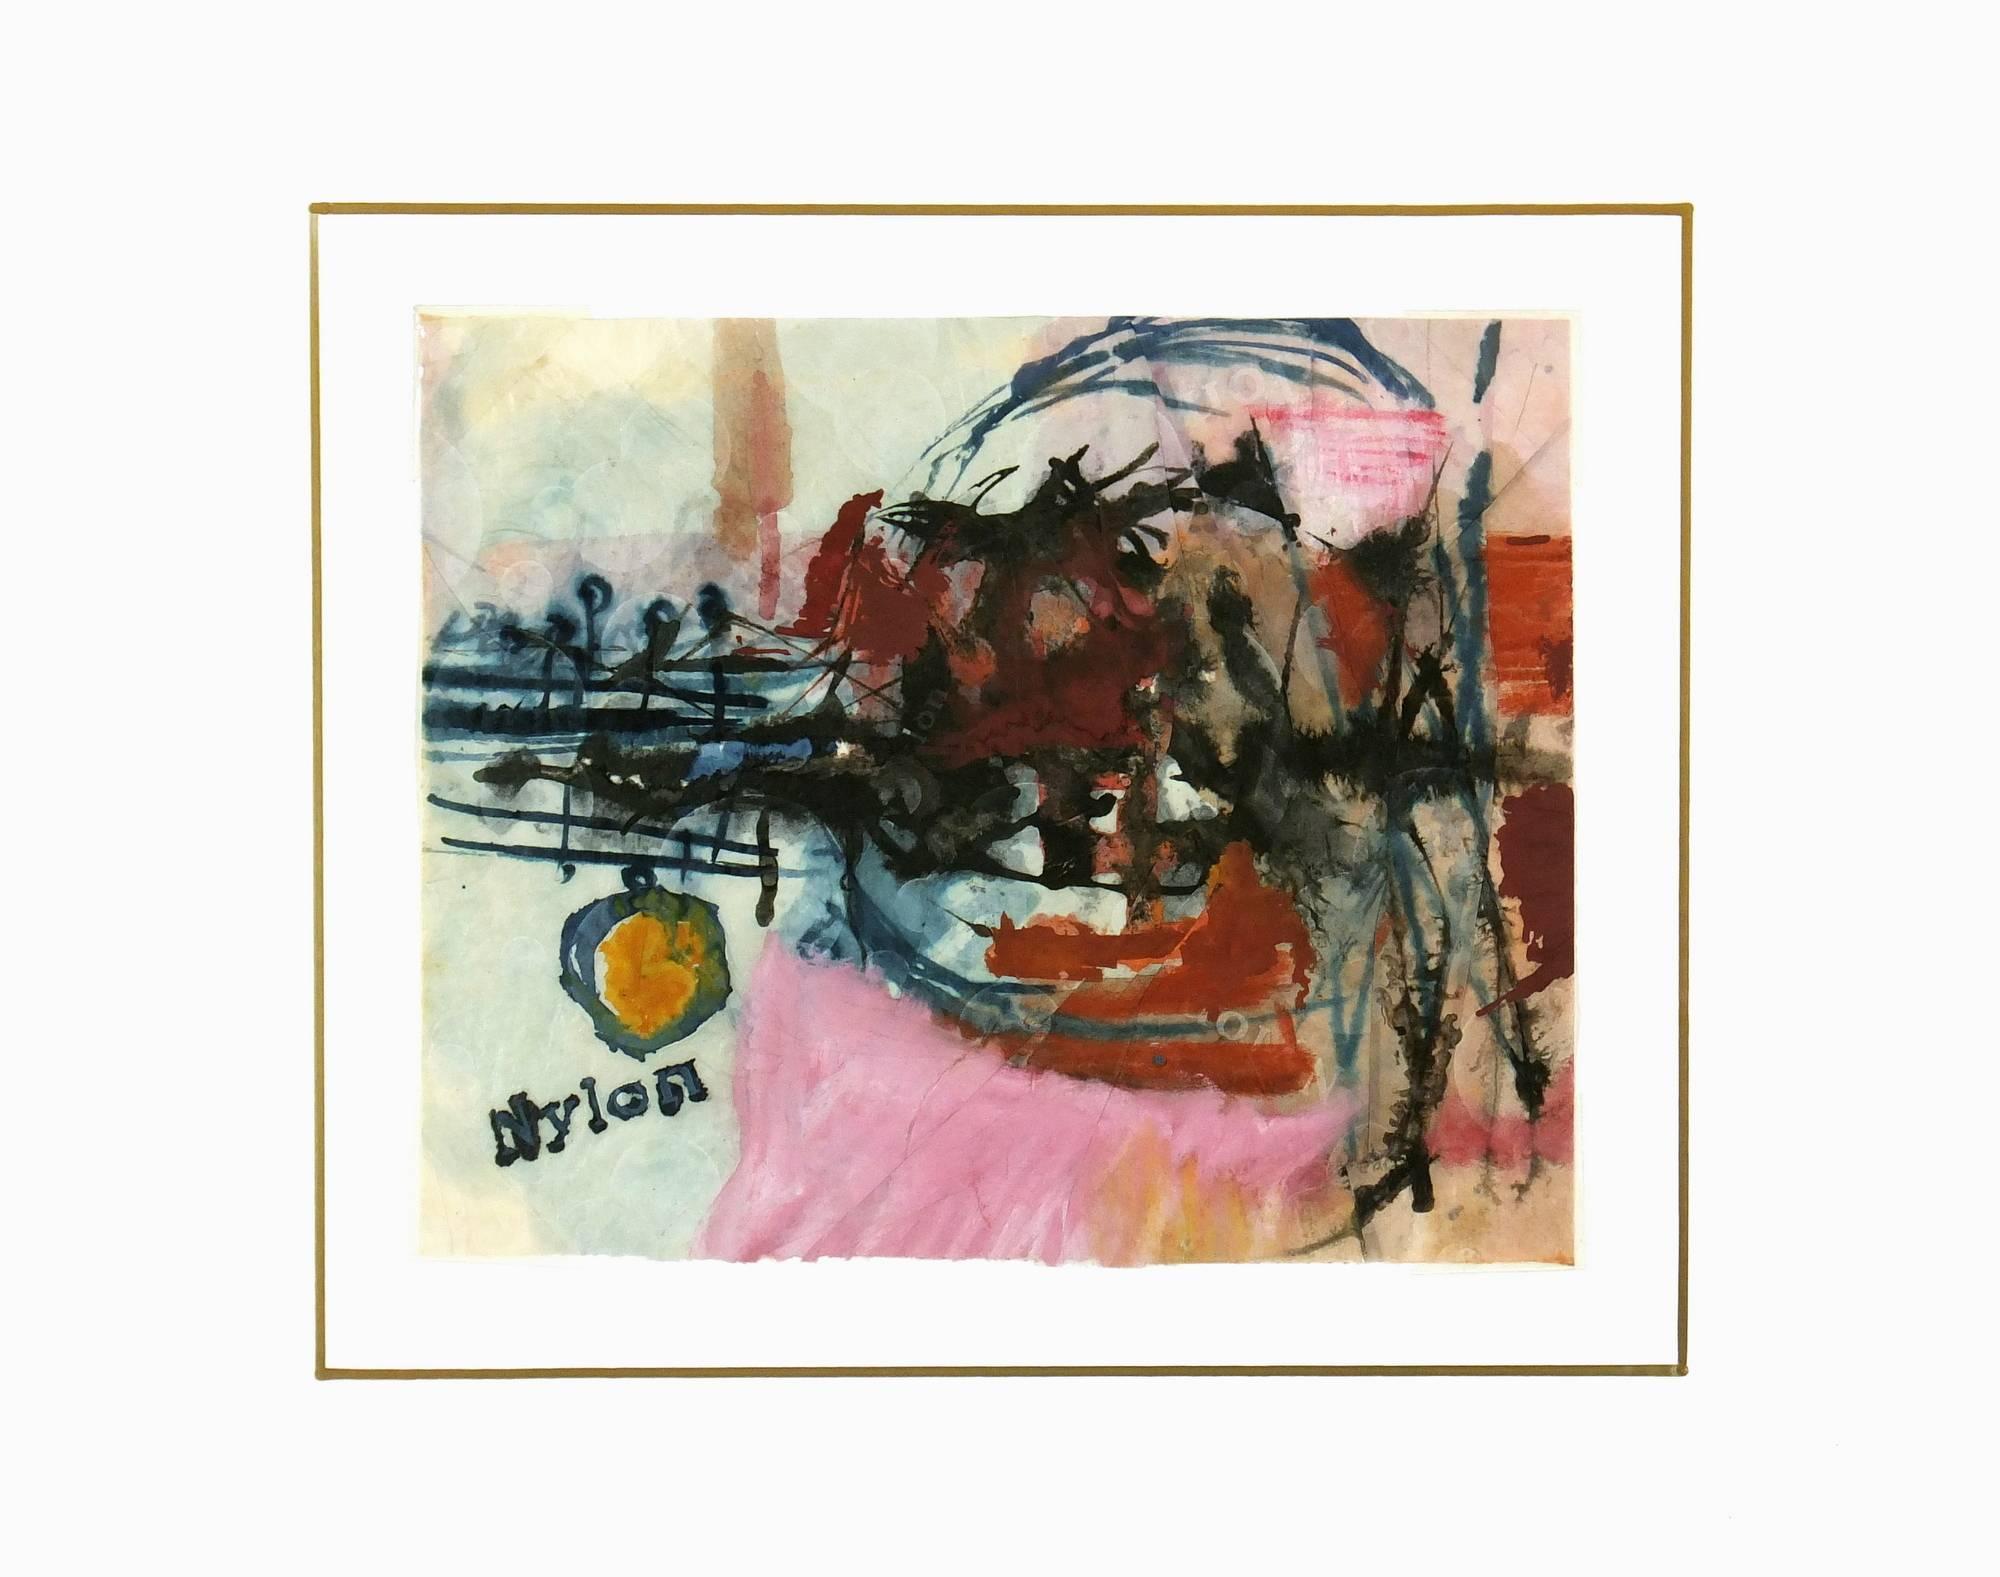 Lebendiges abstraktes Gemälde, signiert Nylon unten links, um 1970.    

Originalkunstwerk auf Papier auf einem weißen Passepartout mit Goldrand. Die Matte passt in einen Rahmen in Standardgröße.  Inklusive Plastikhülle und Echtheitszertifikat für